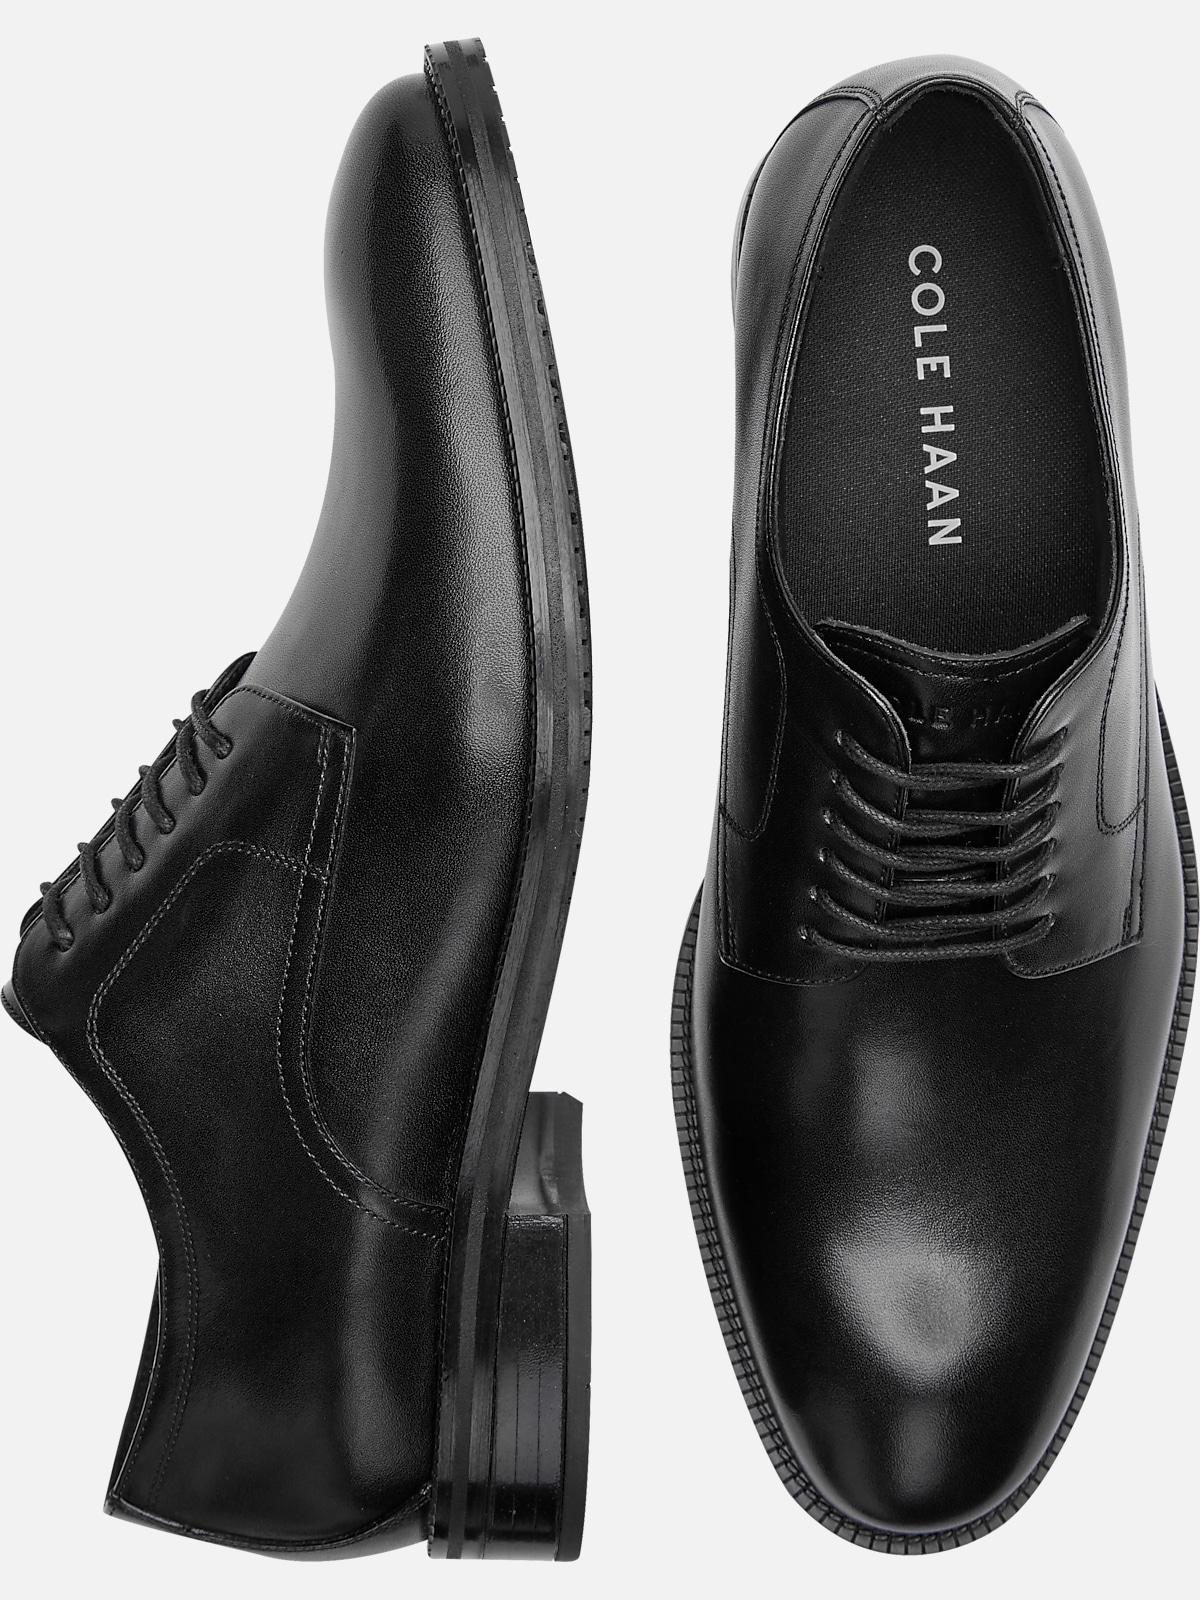 Cole Haan Modern Essentials Plain Toe Oxfords | Dress Shoes| Men's ...